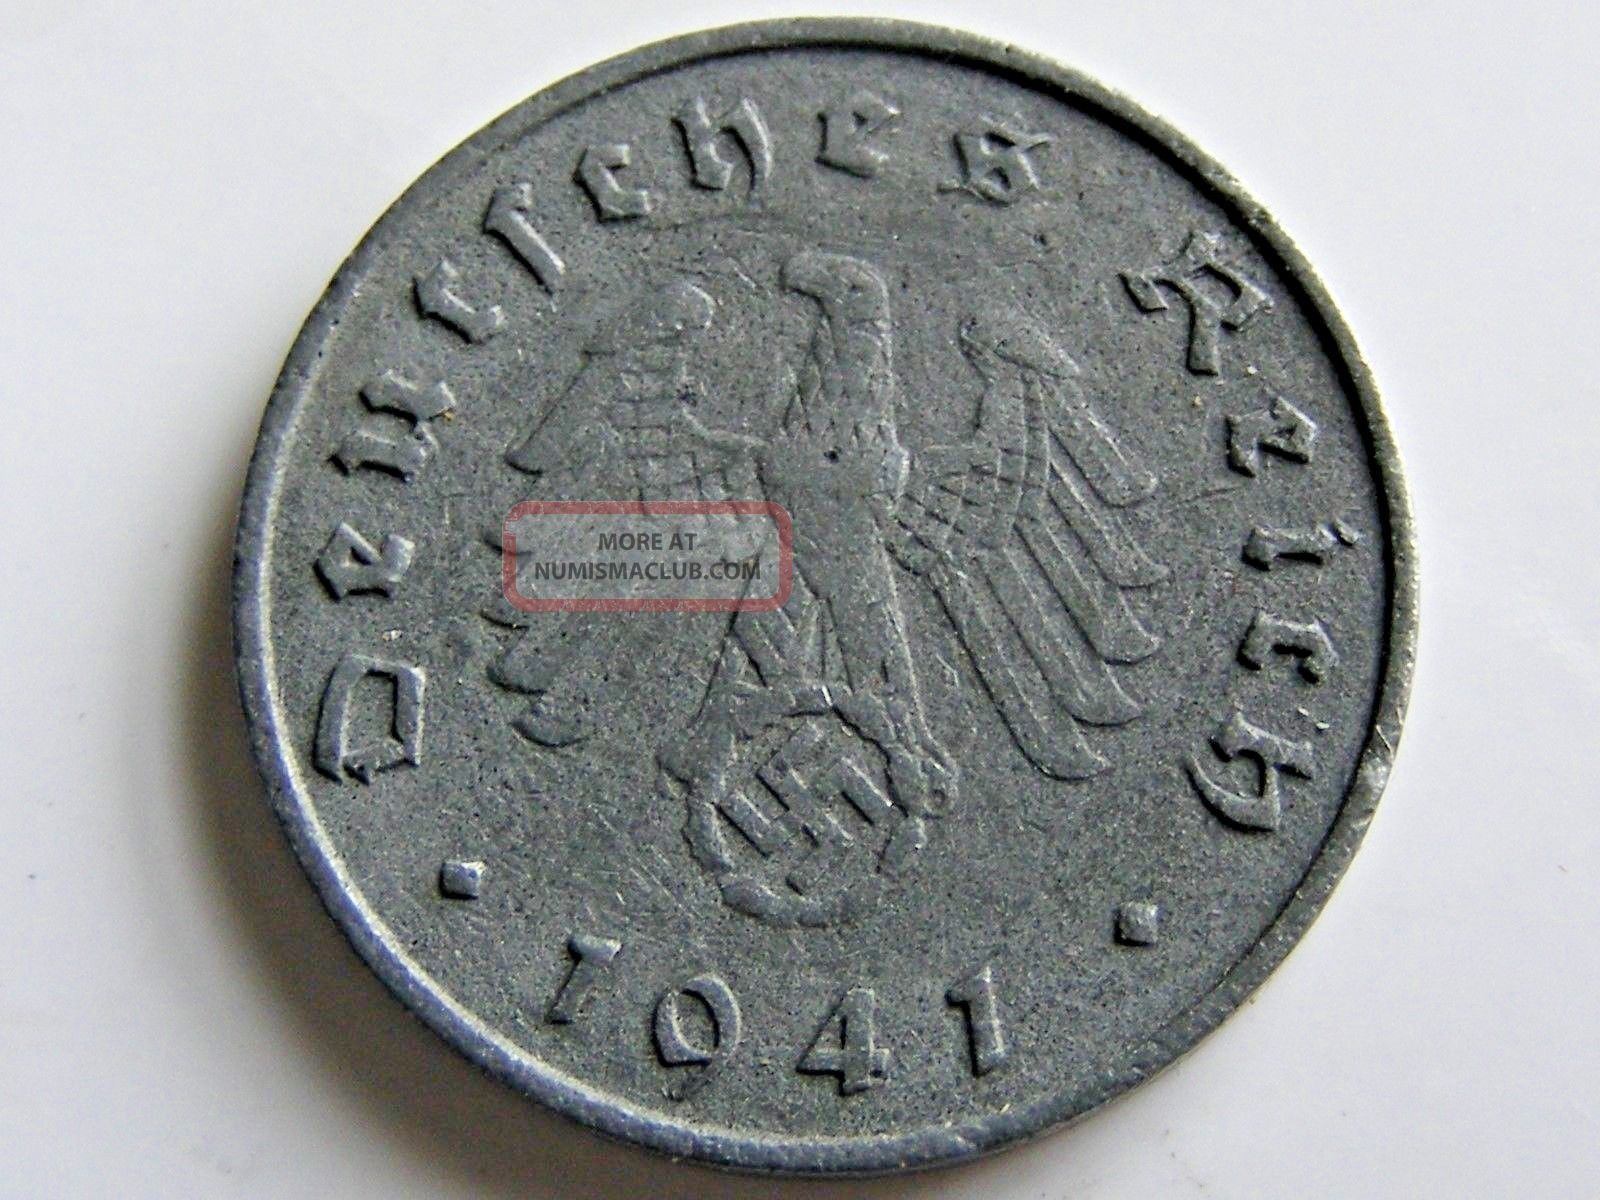 Ww2 1941 A German 10 Rp Reichspfennig 3rd Reich Nazi Coin